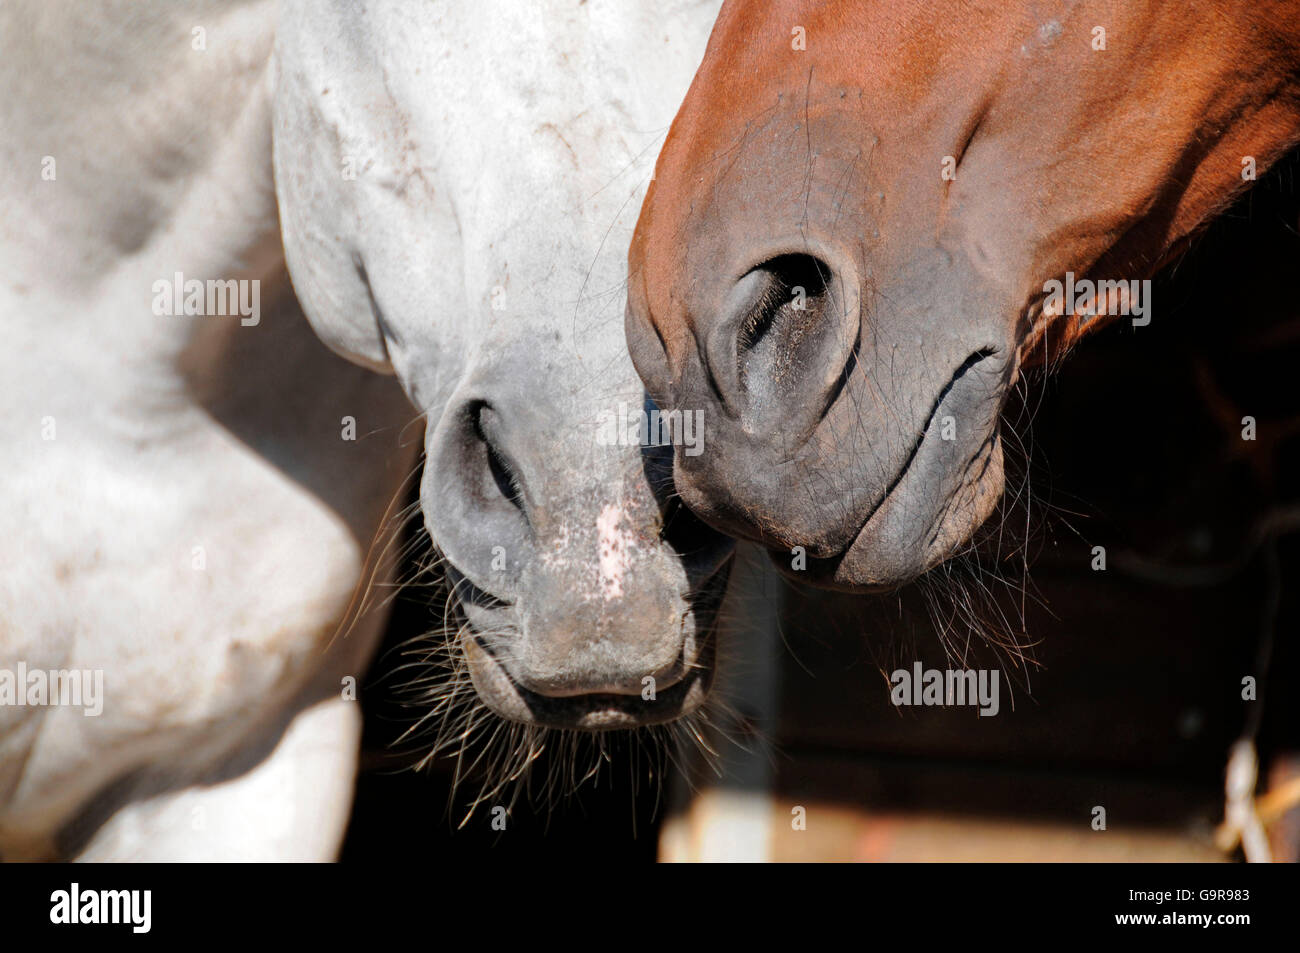 Domestic Horses, noses, nostrils Stock Photo